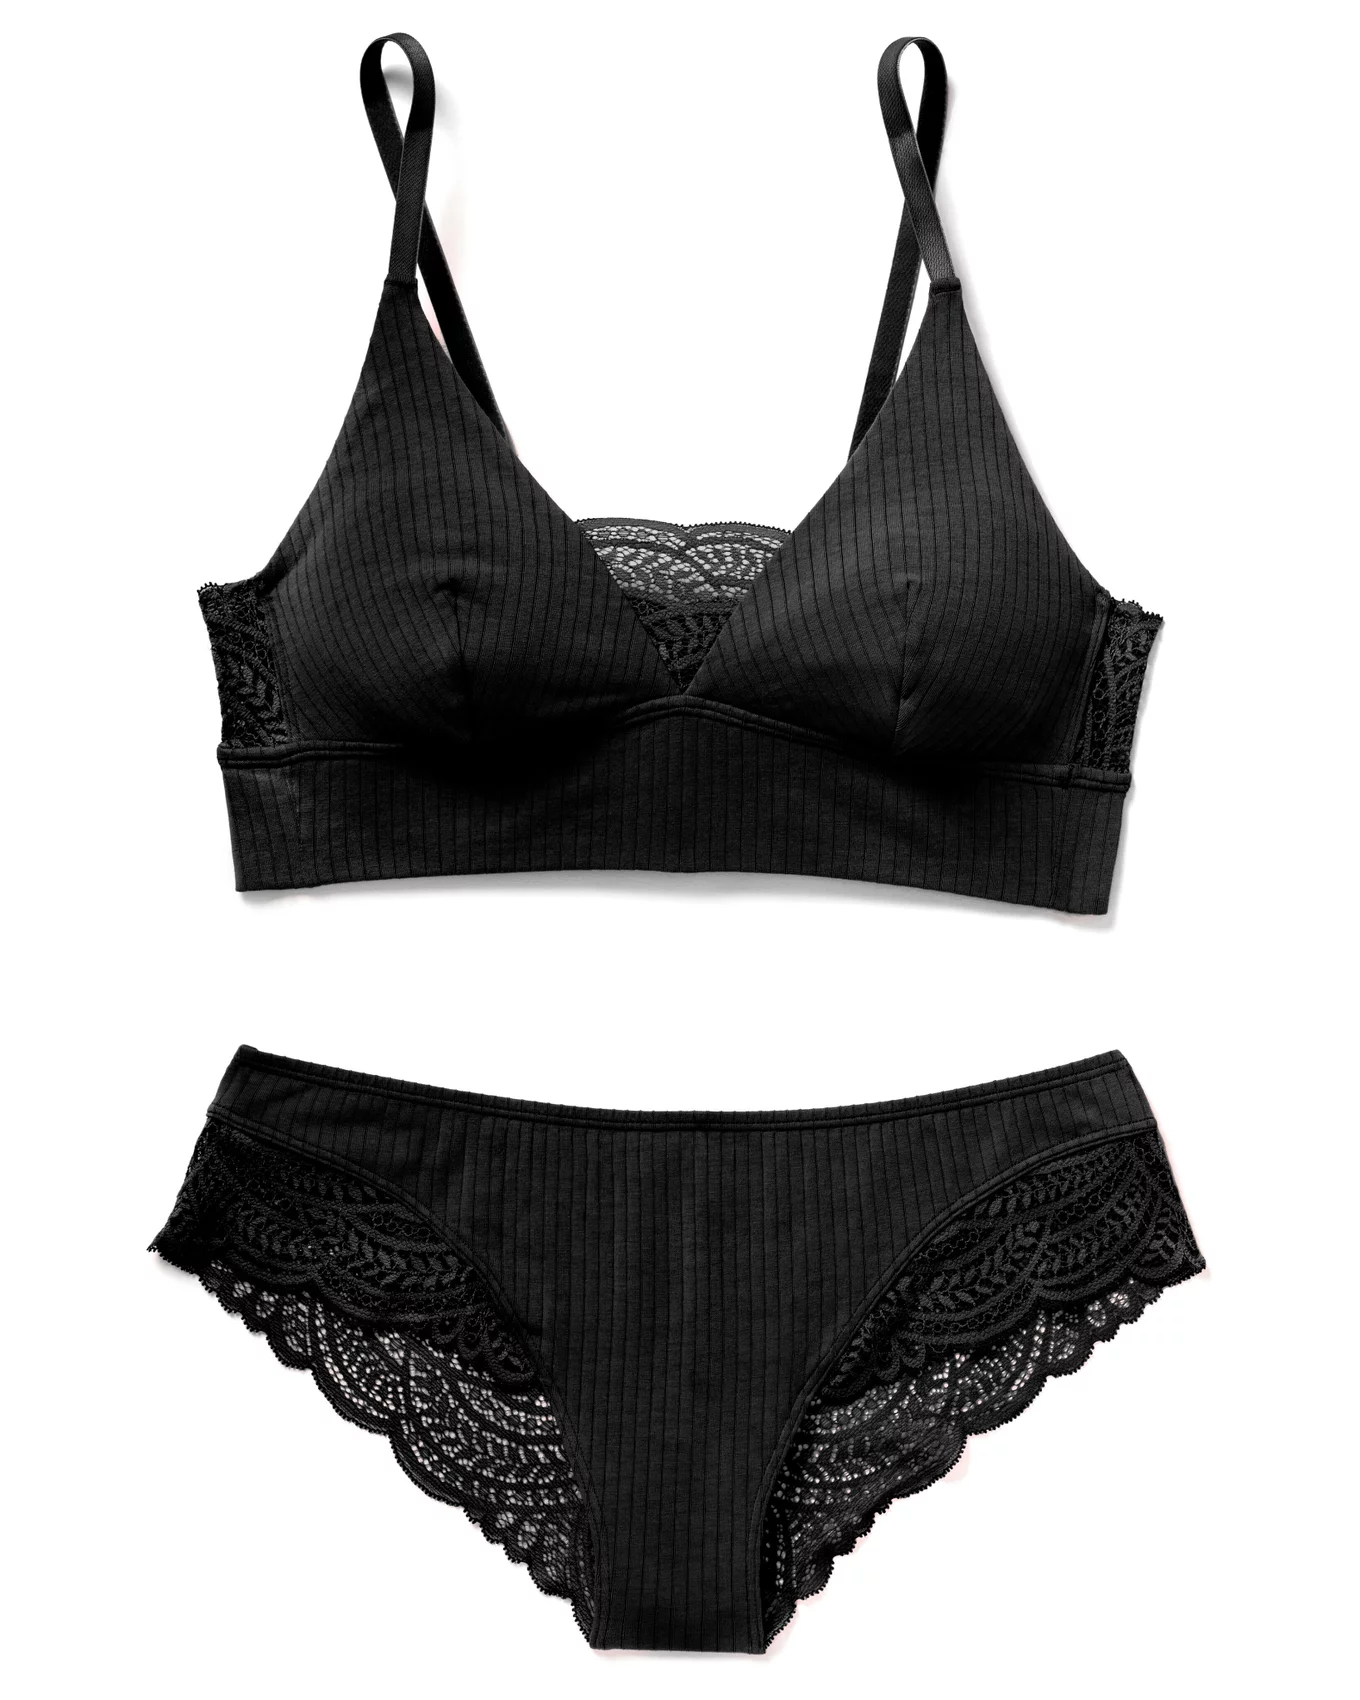 Buy Bra Penty Set New Style Black Lace Crotchless Booty Short